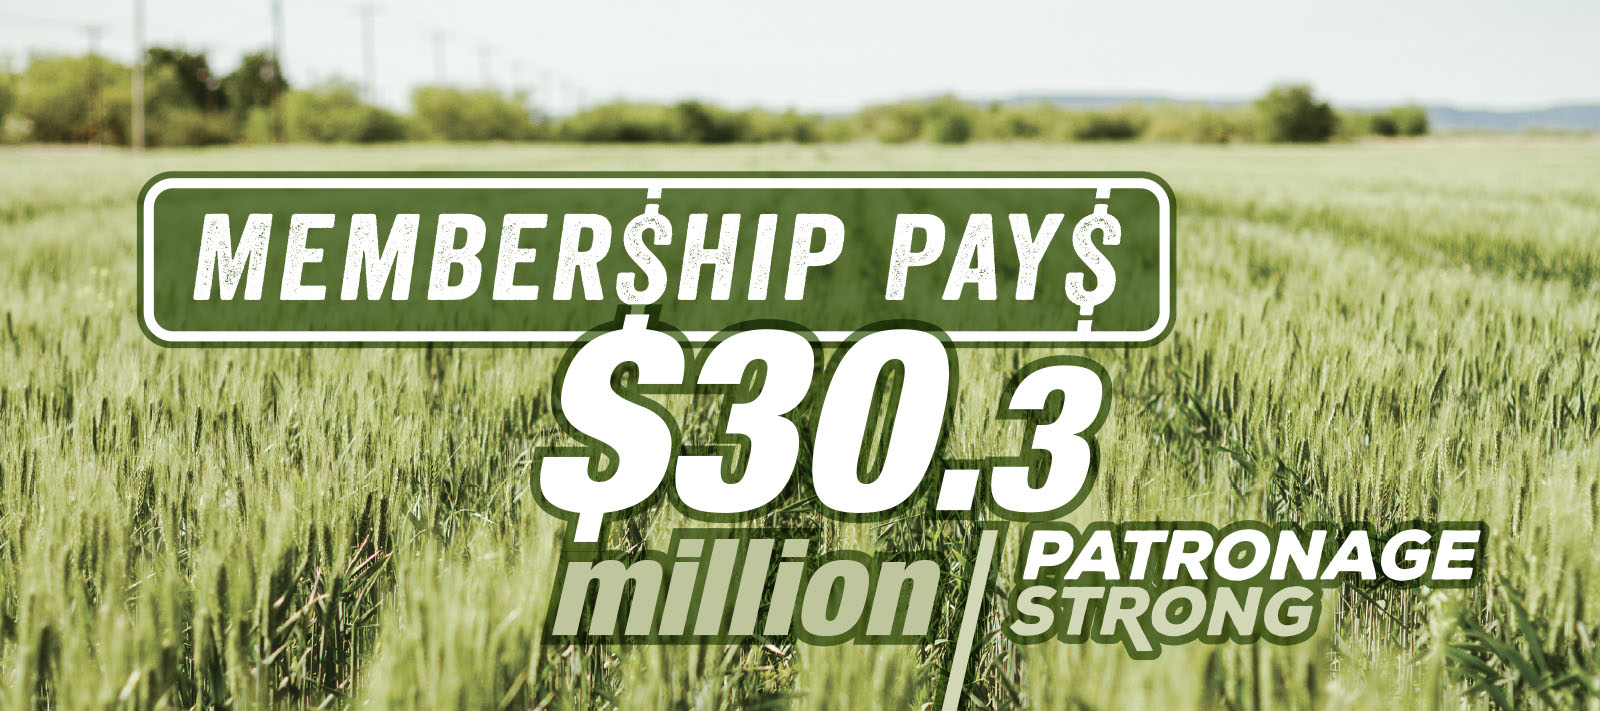 Patronage - Membership Pays - $30.3 Million in Patronage